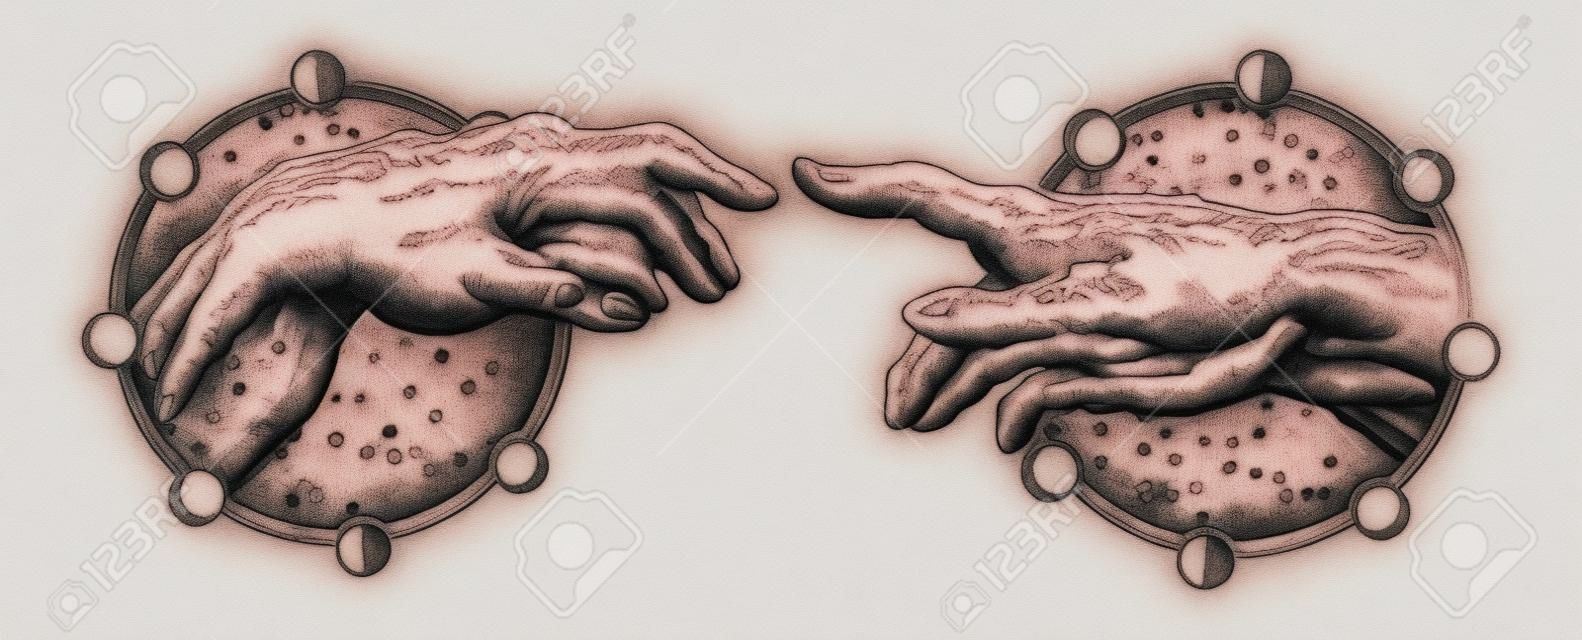 Il tocco di Dio di Michelangelo. Mani umane toccanti con le dita tatuaggio e la maglietta design. Mani di tatuaggio Rinascimento. Dei e Adamo, simbolo di spiritualità, religione, connessione e interazione